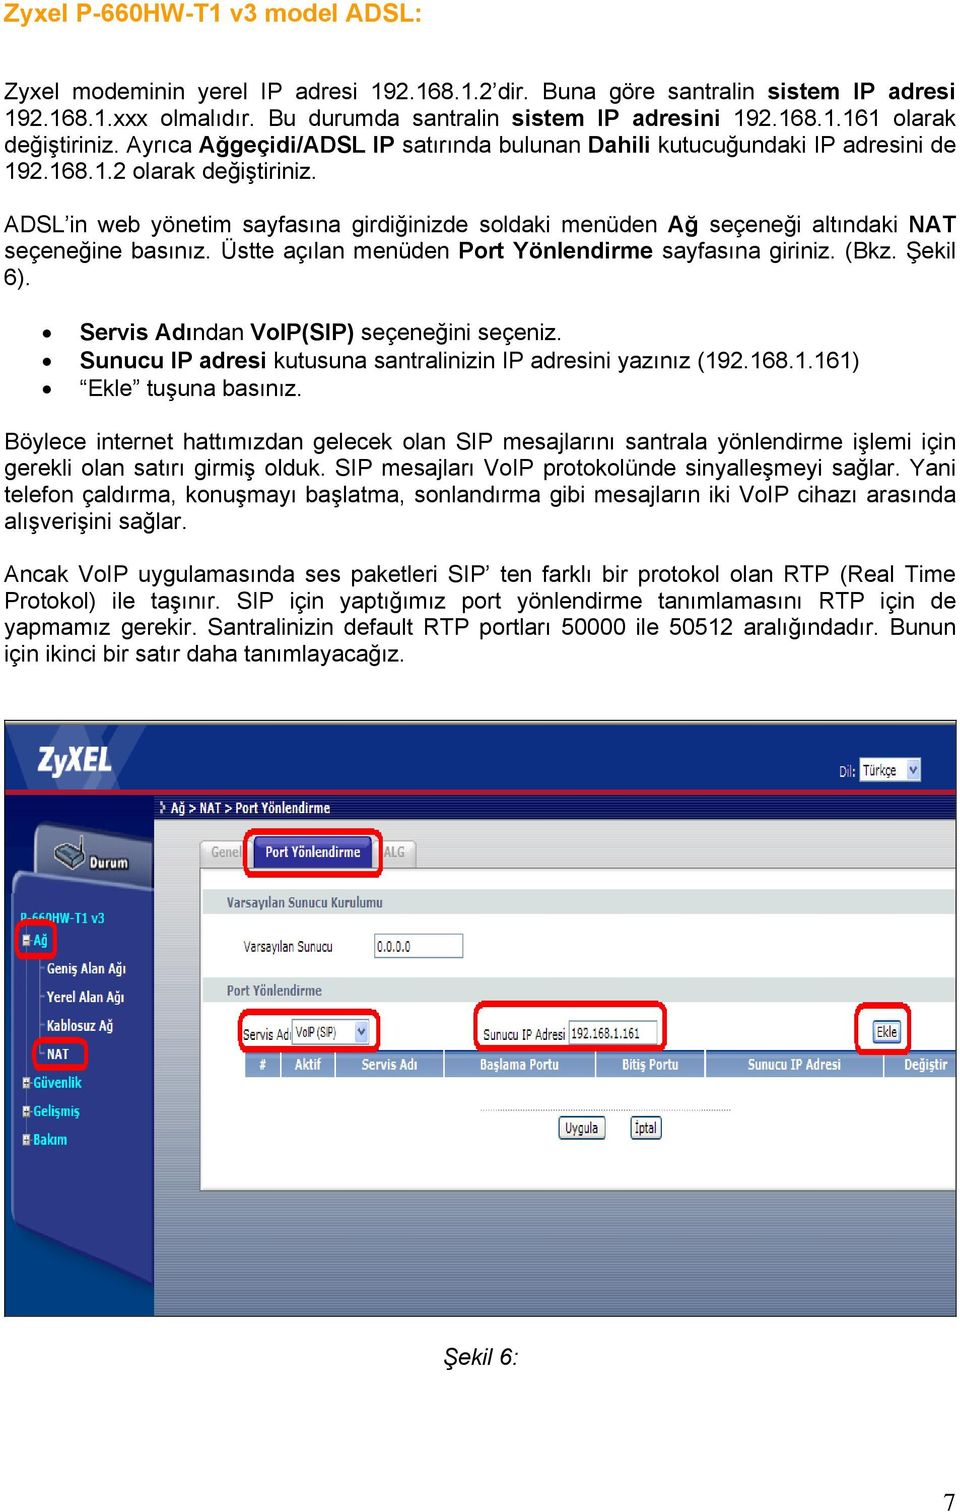 ADSL in web yönetim sayfasına girdiğinizde soldaki menüden Ağ seçeneği altındaki NAT seçeneğine basınız. Üstte açılan menüden Port Yönlendirme sayfasına giriniz. (Bkz. Şekil 6).